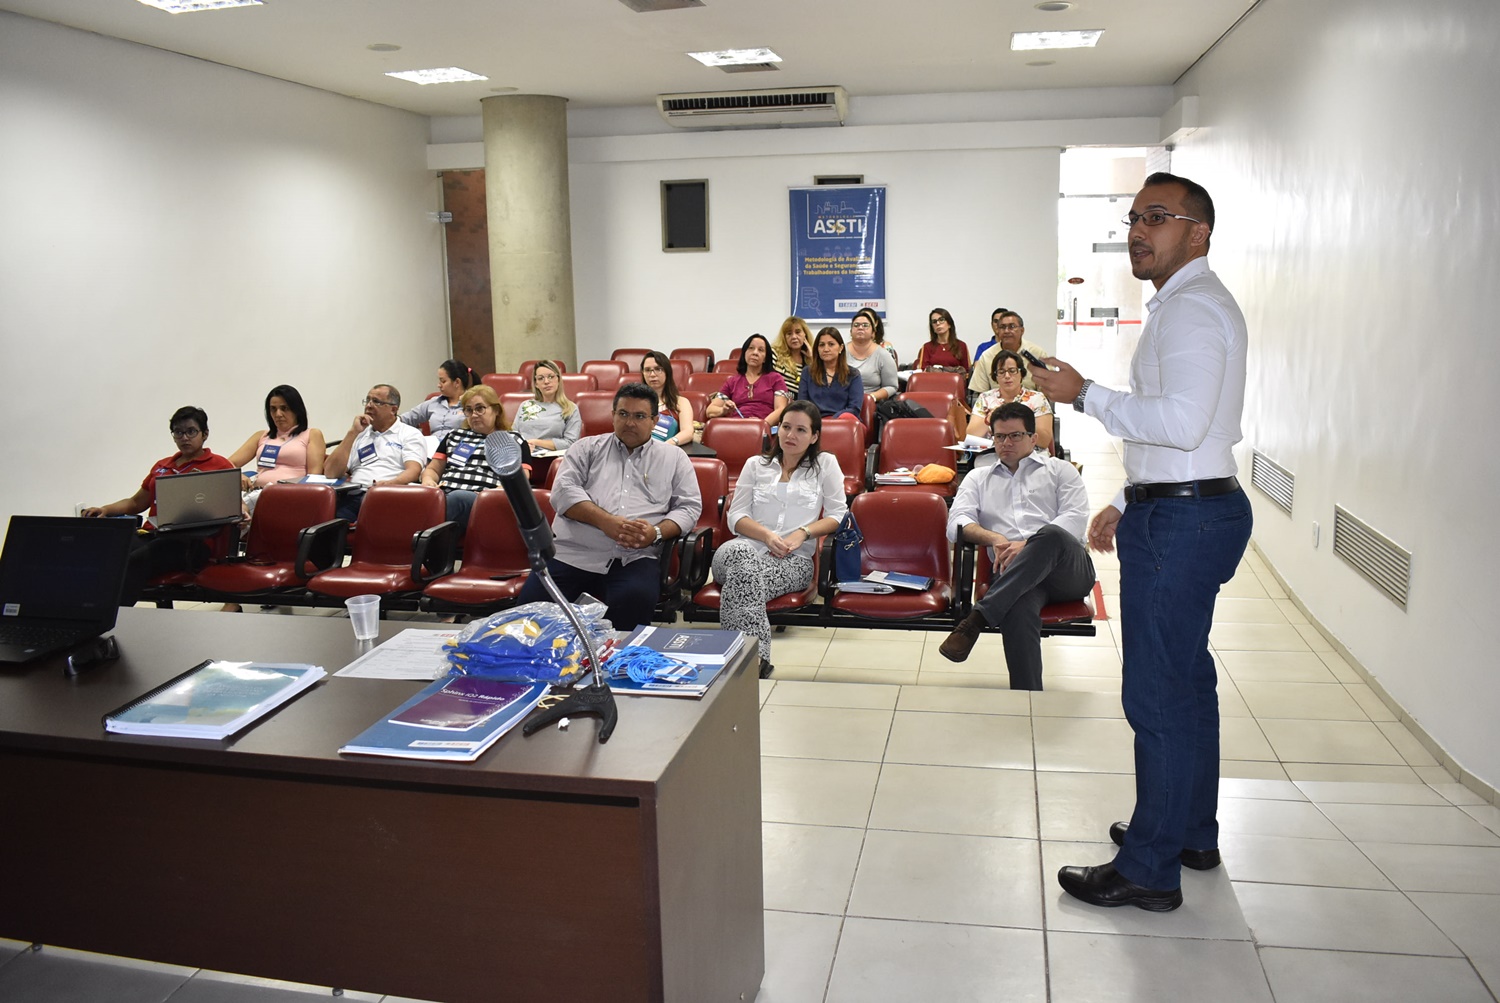 SESI Piauí recebe treinamento em Saúde e Segurança